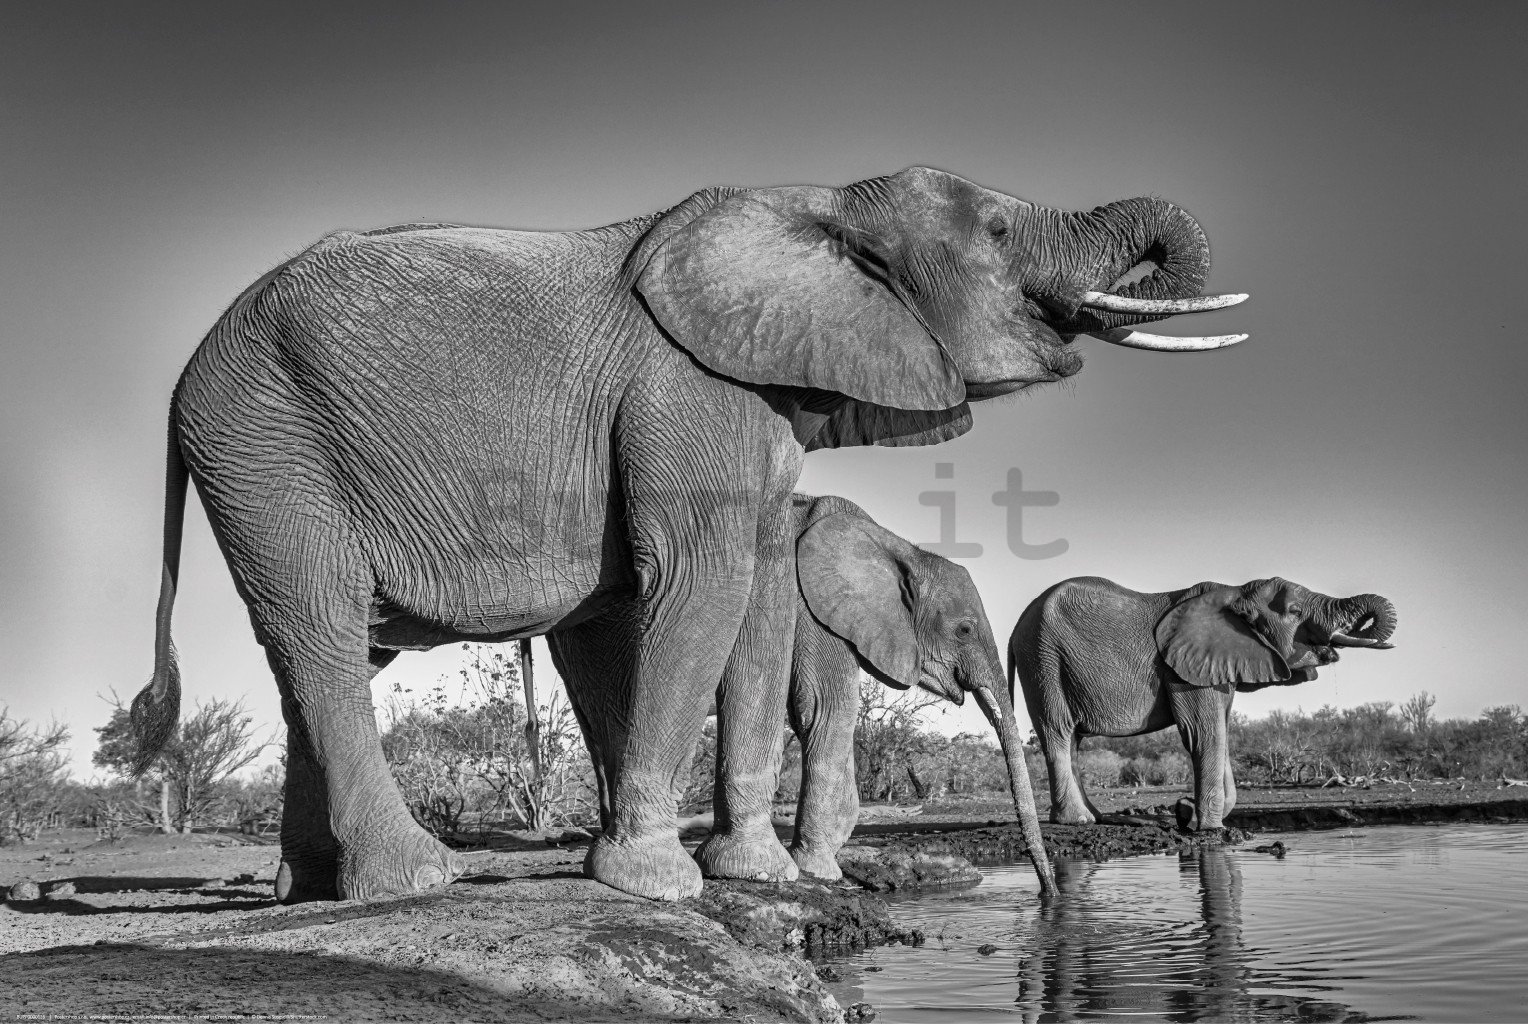 Poster: Elefanti all'abbeveratoio